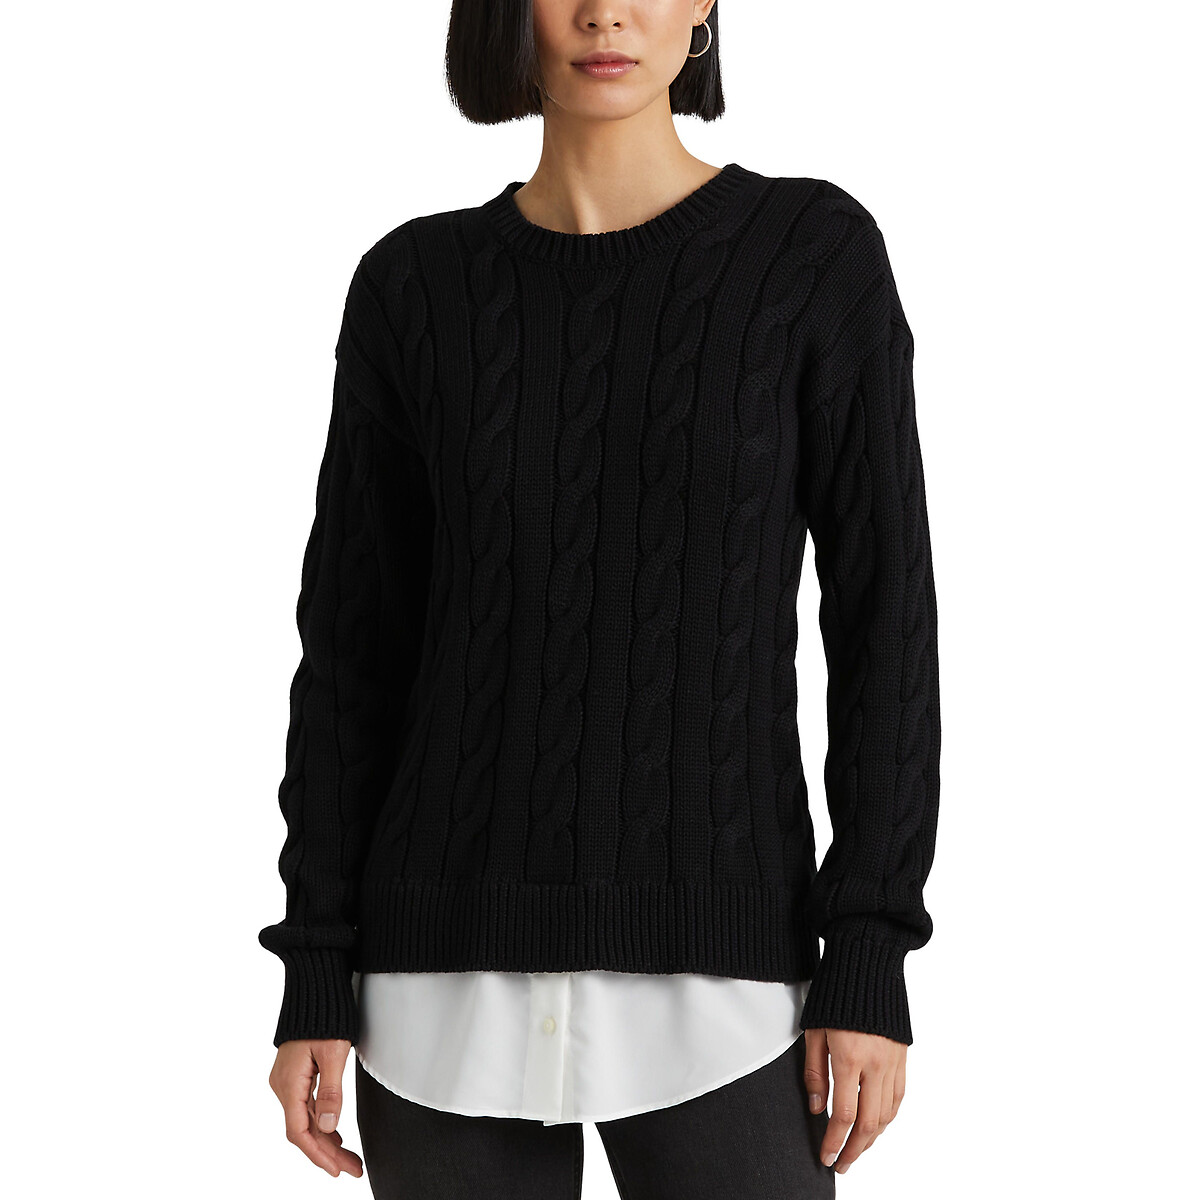 Пуловер С круглым вырезом из плетеного трикотажа L черный